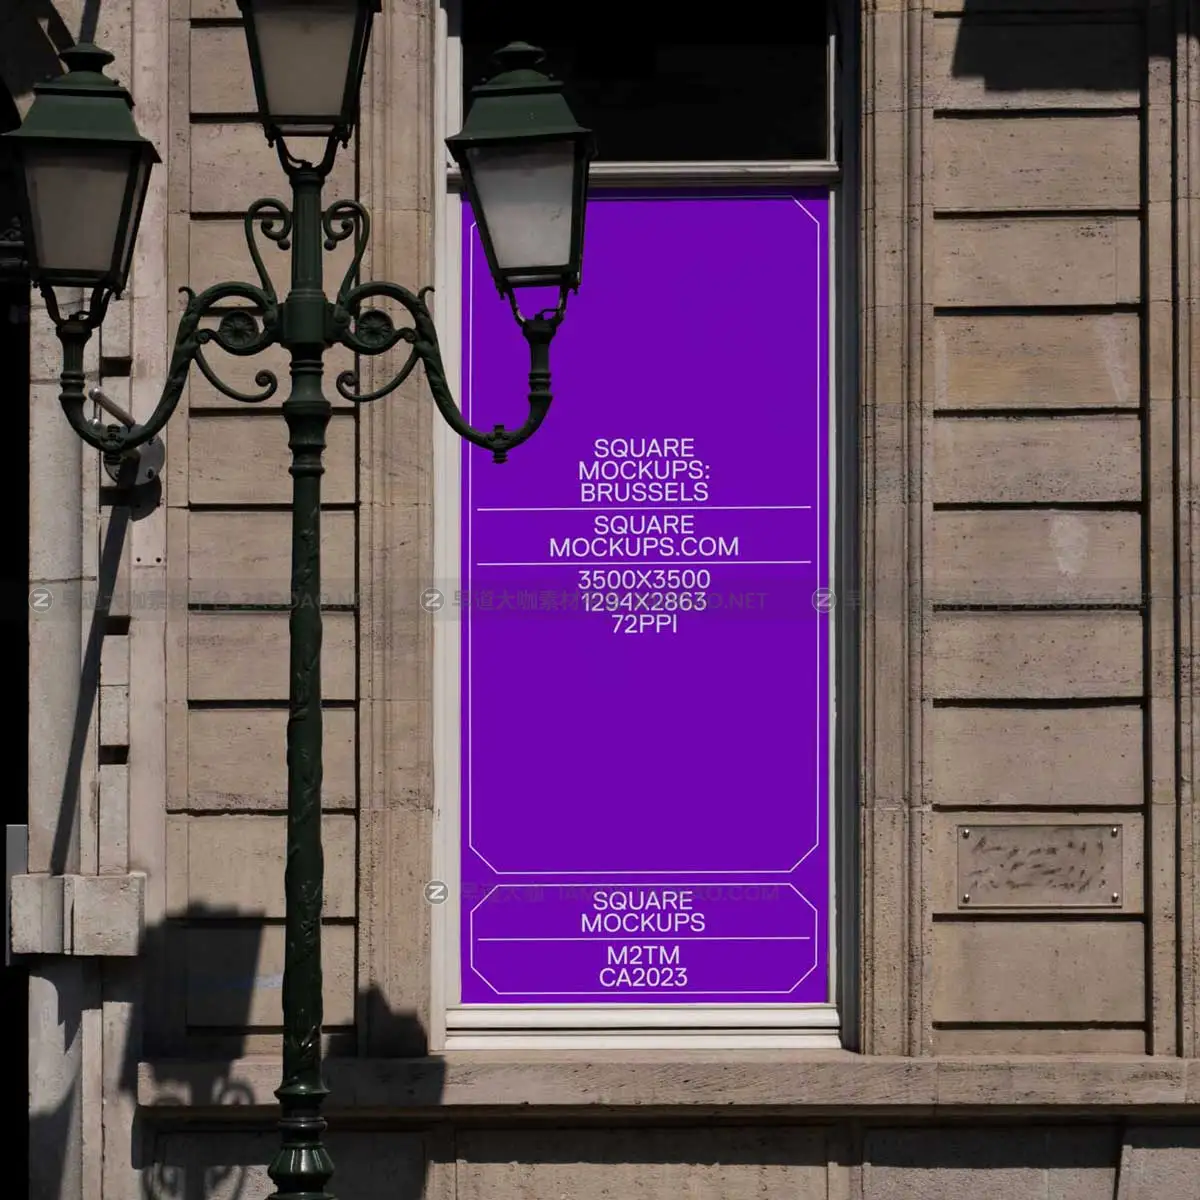 时尚欧美风城市街头墙体商场门店玻璃贴纸海报招贴广告牌设计展示PSD样机模板 Windowfront Mockup Scene Brussels Series Vol1插图6